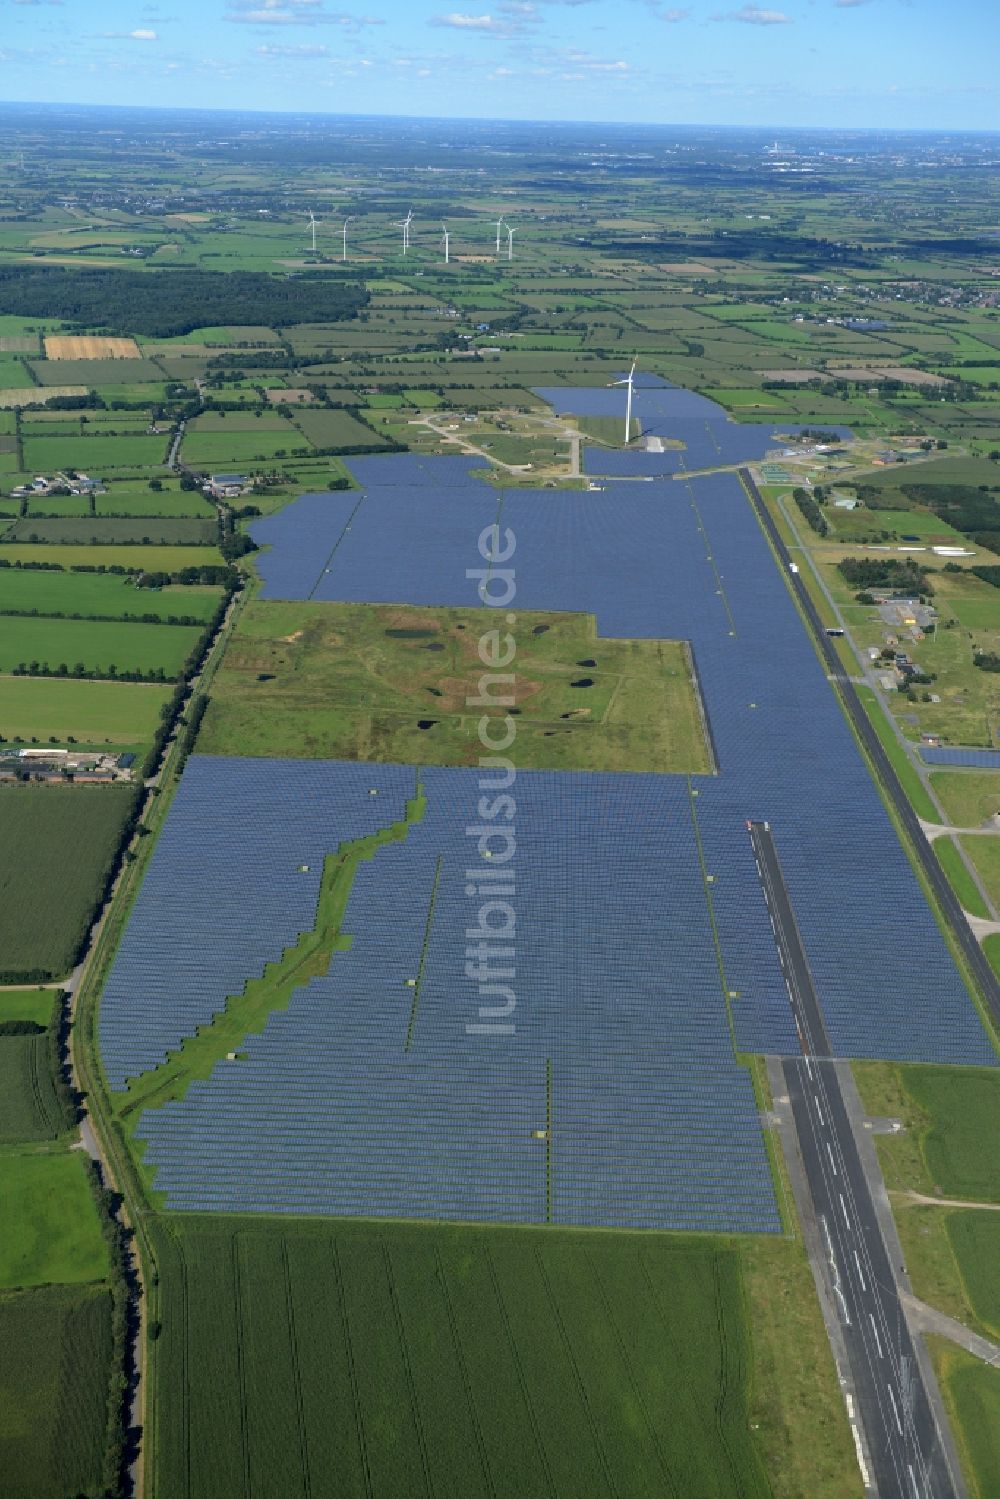 Eggebek von oben - Solarpark bzw. Solarkraftwerk in Eggebek im Bundesland Schleswig-Holstein